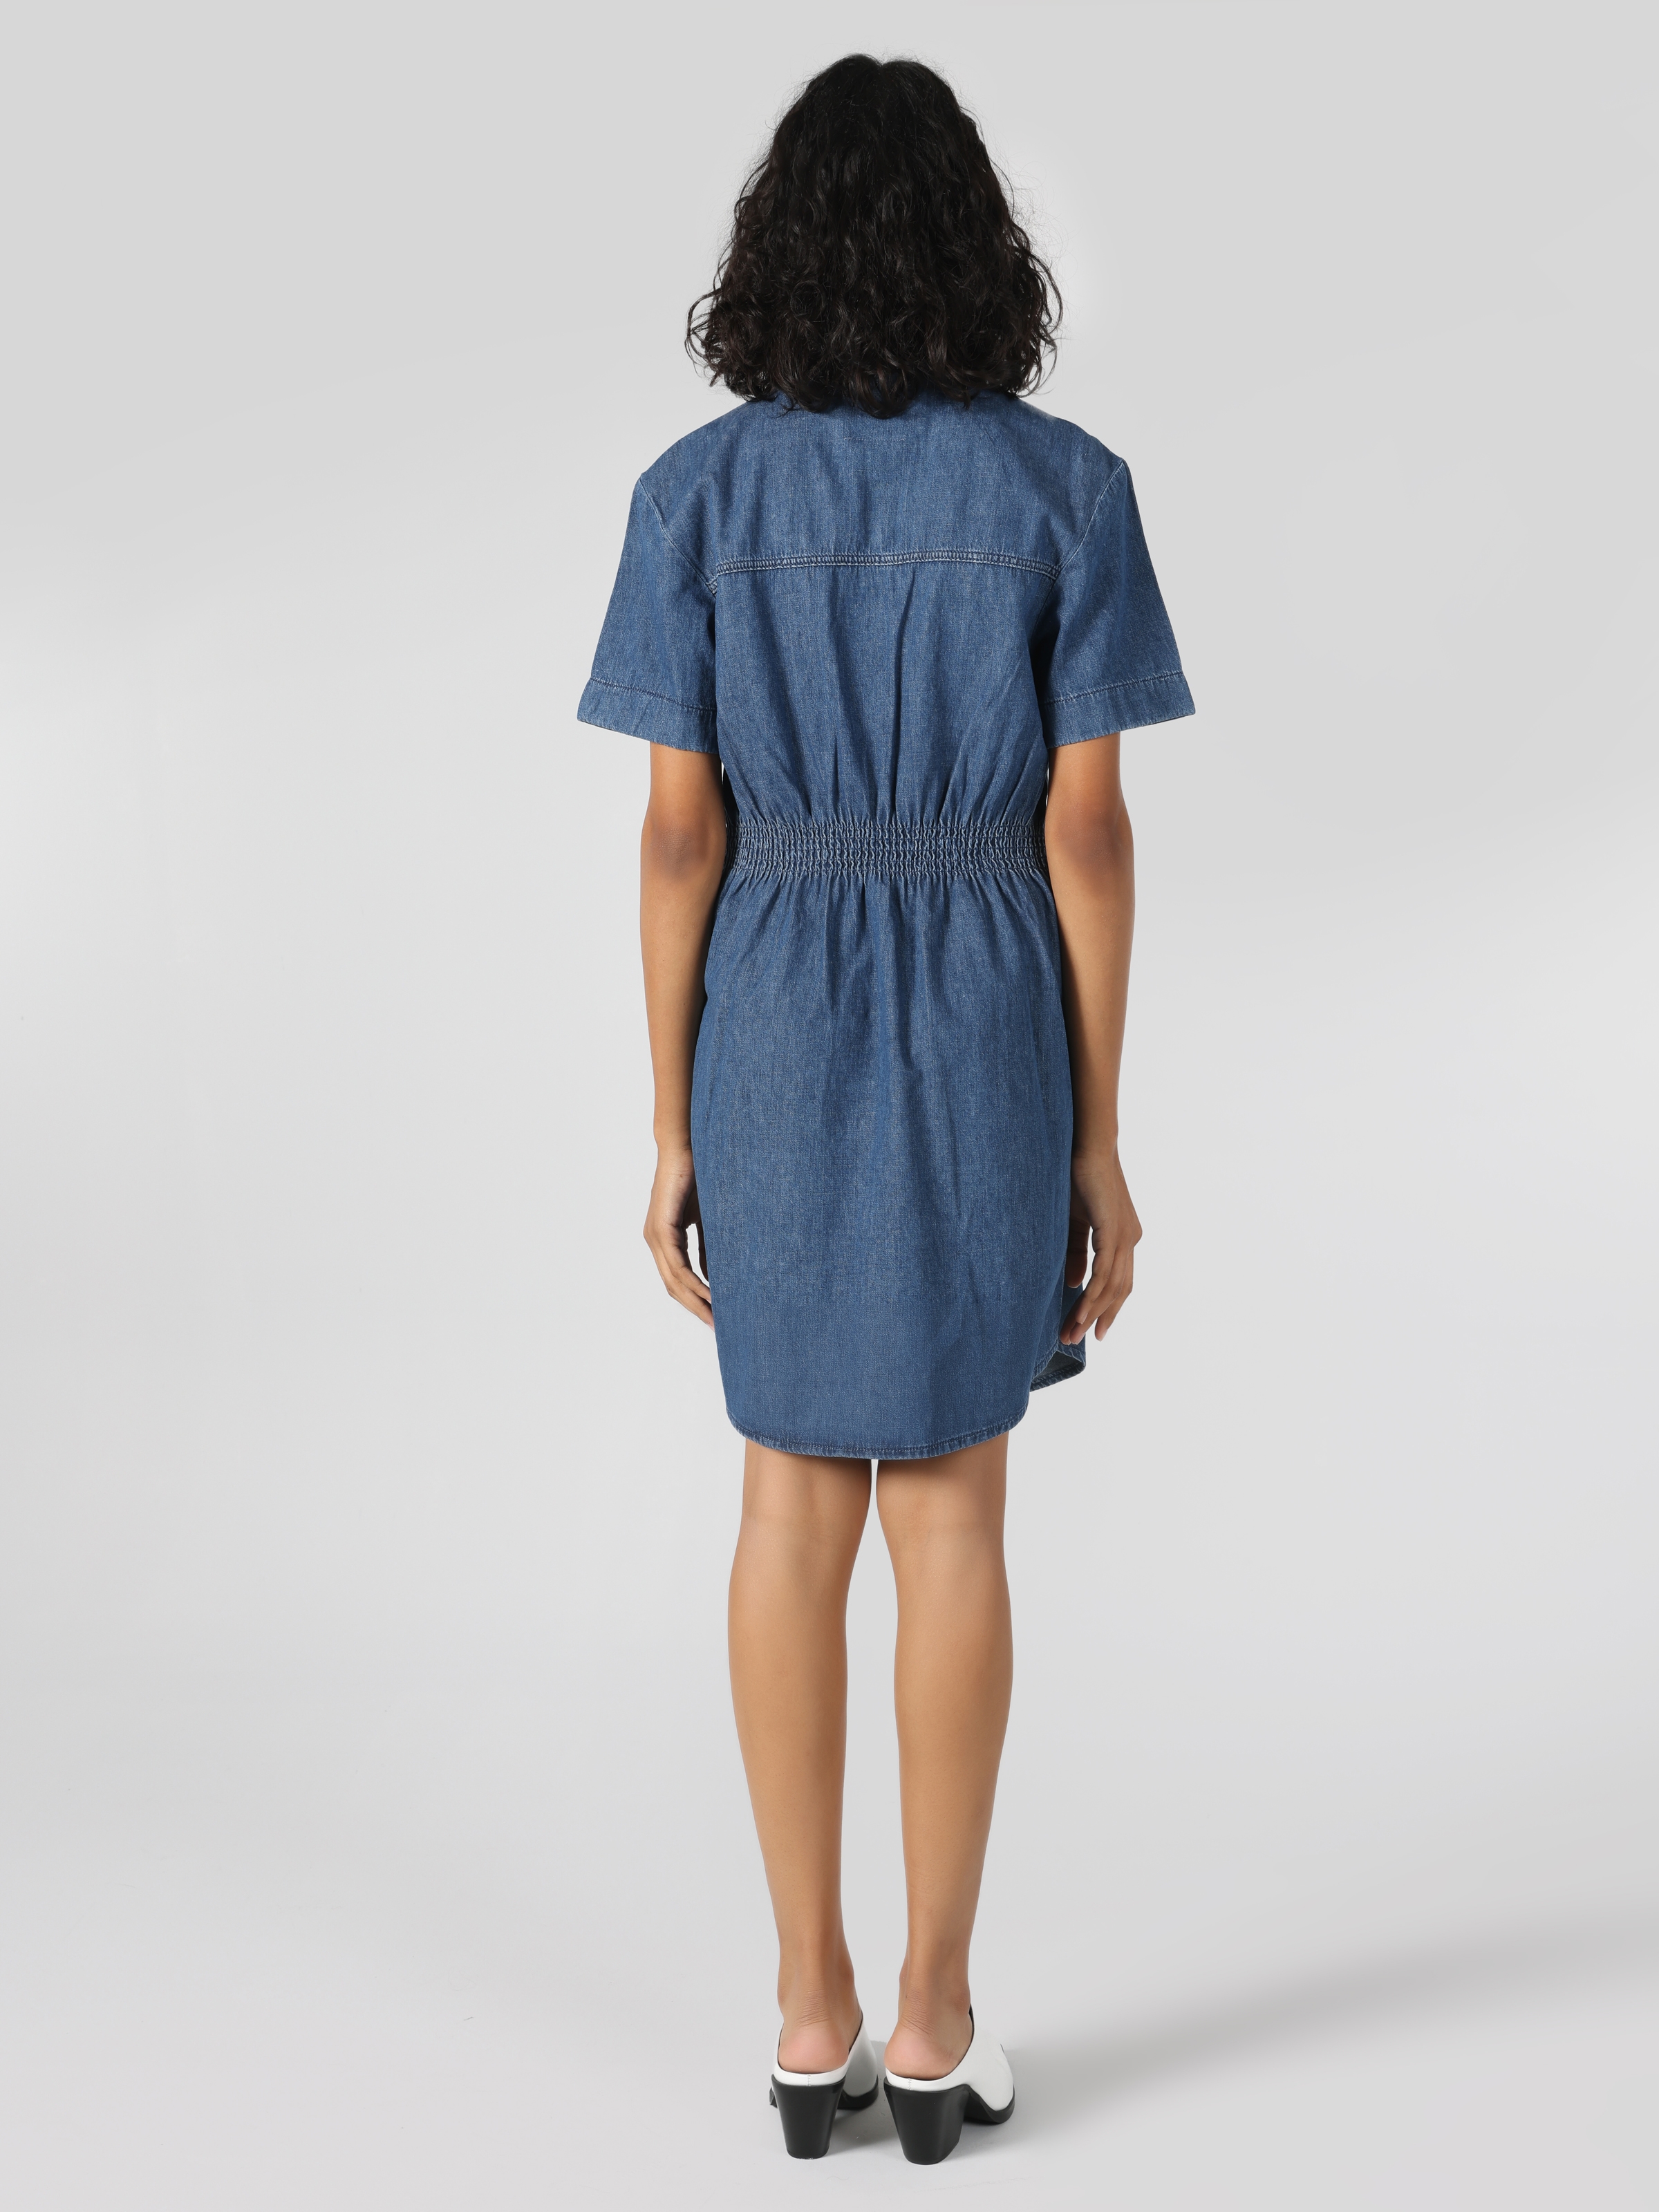 Afficher les détails de Robe Femme Bleu Denim Coupe Slim